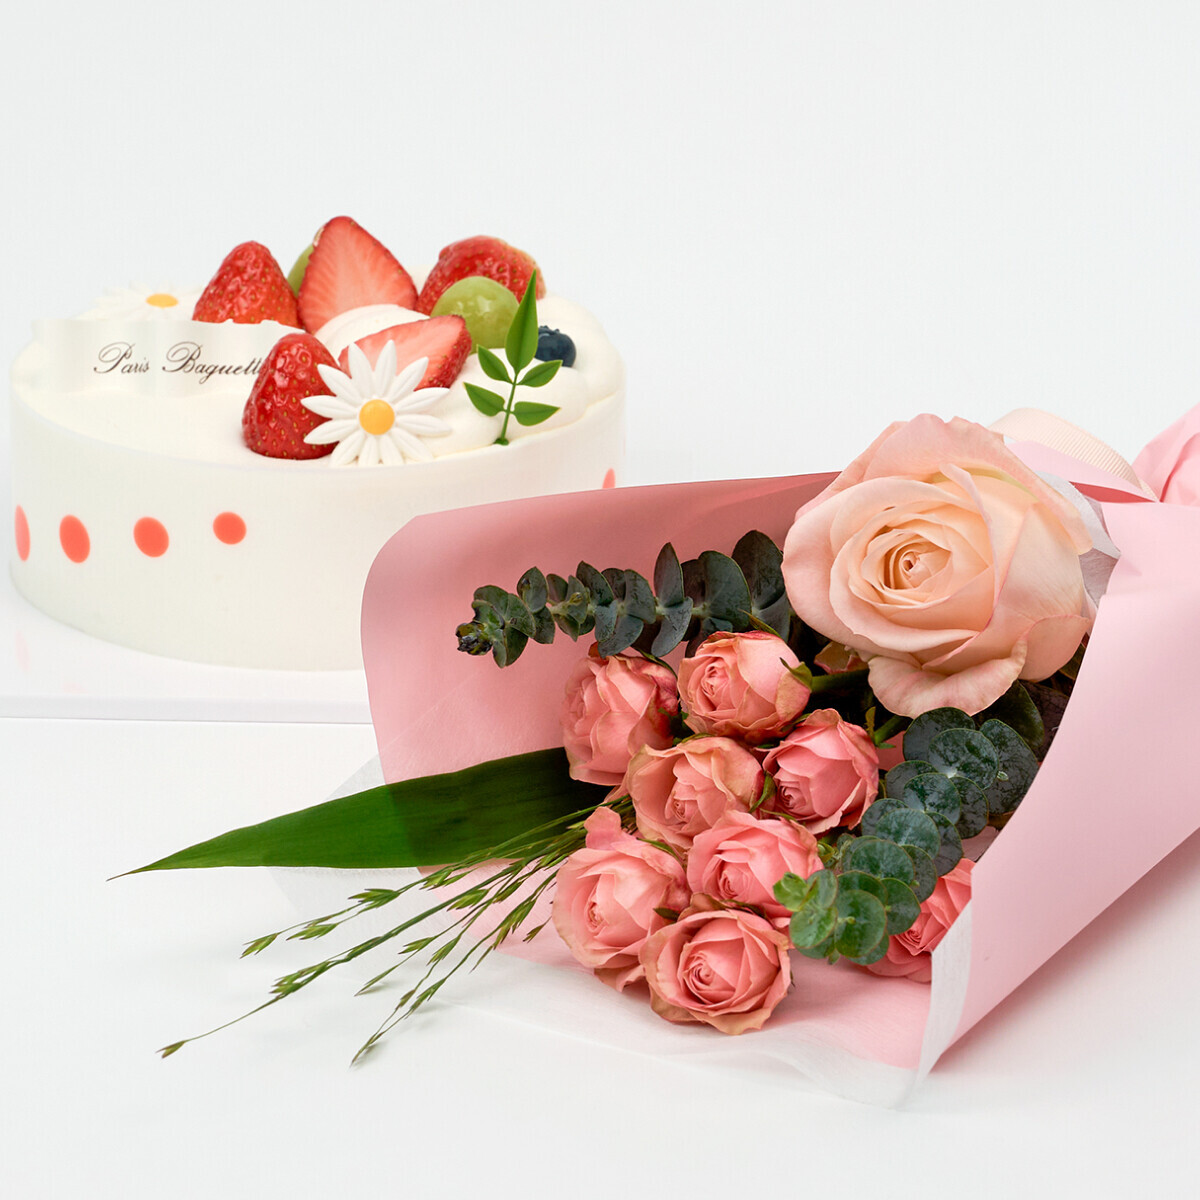 생크림 케이크와 꽃다발